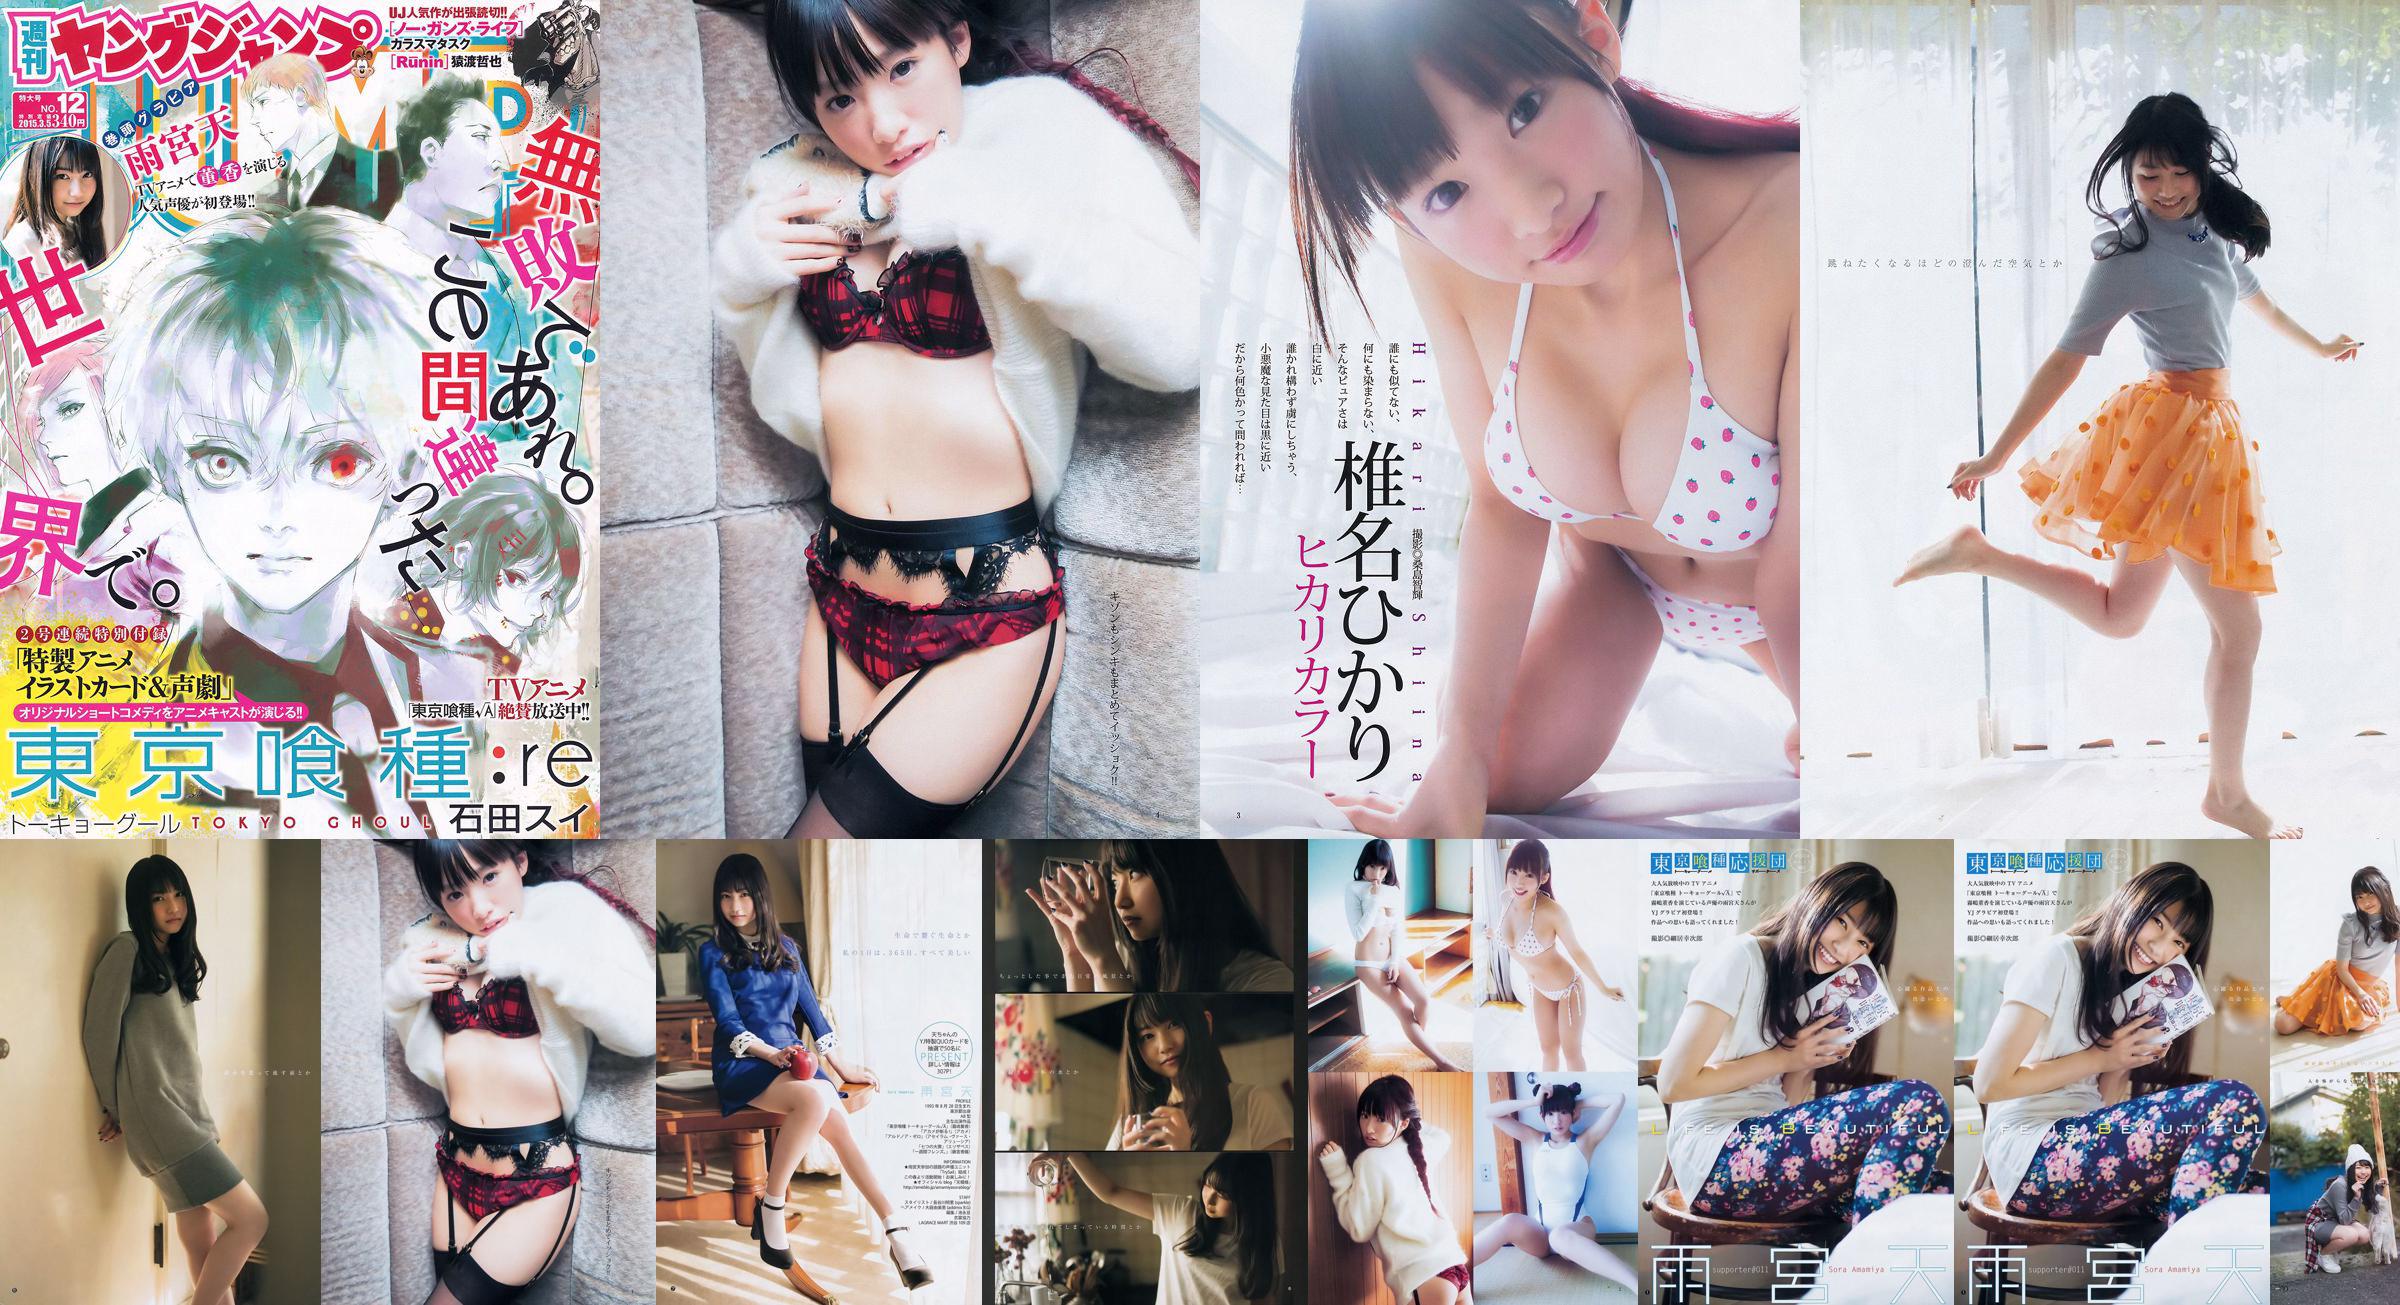 Amamiya Tian Shiina ひかり [Weekly Young Jump] 2015 No.12 Photo Magazine No.4fc044 Page 4